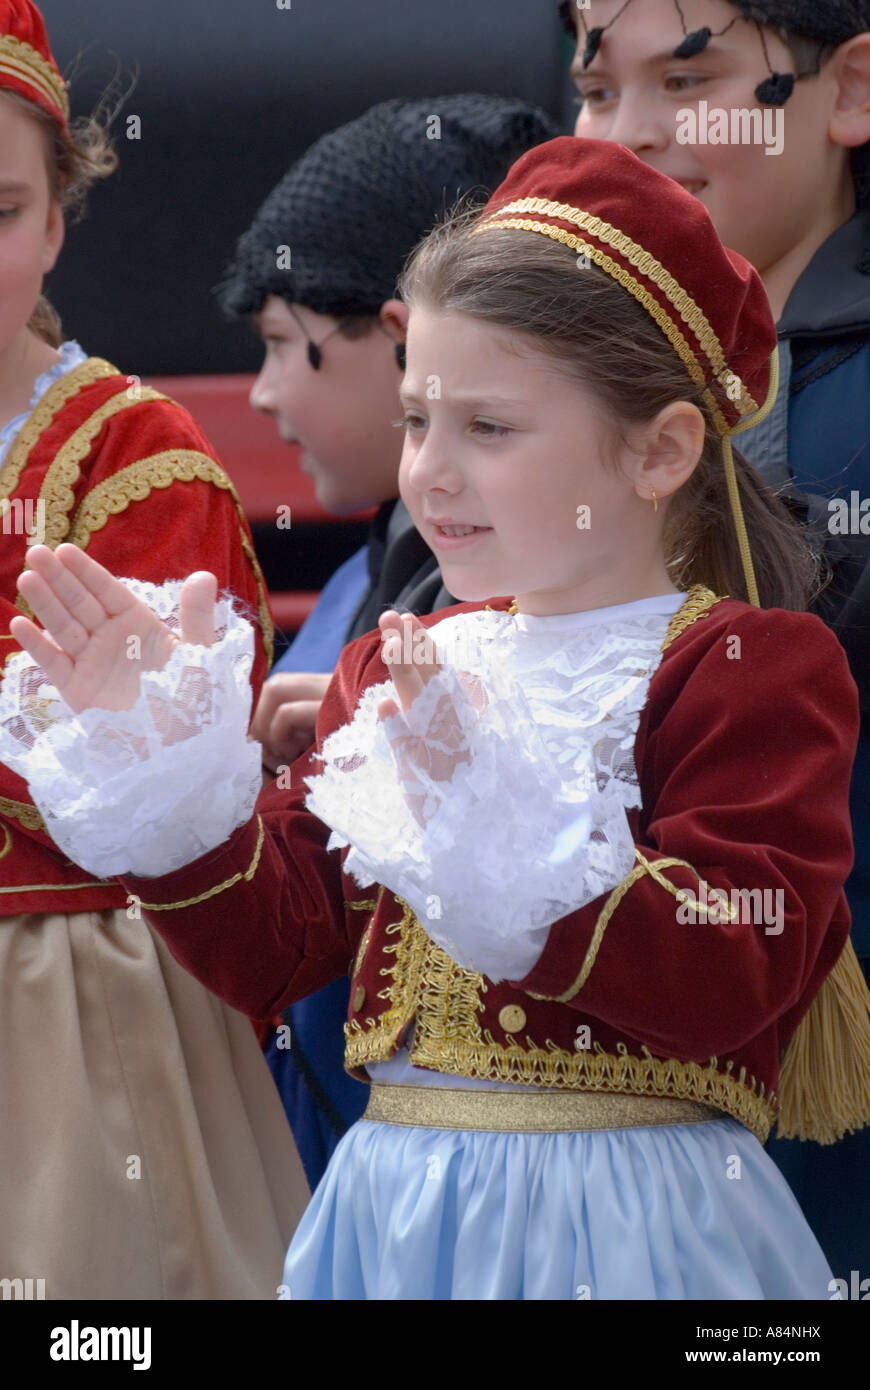 Enfants australiens d'origine grecque à célébrer une fête en costume traditionnel Banque D'Images